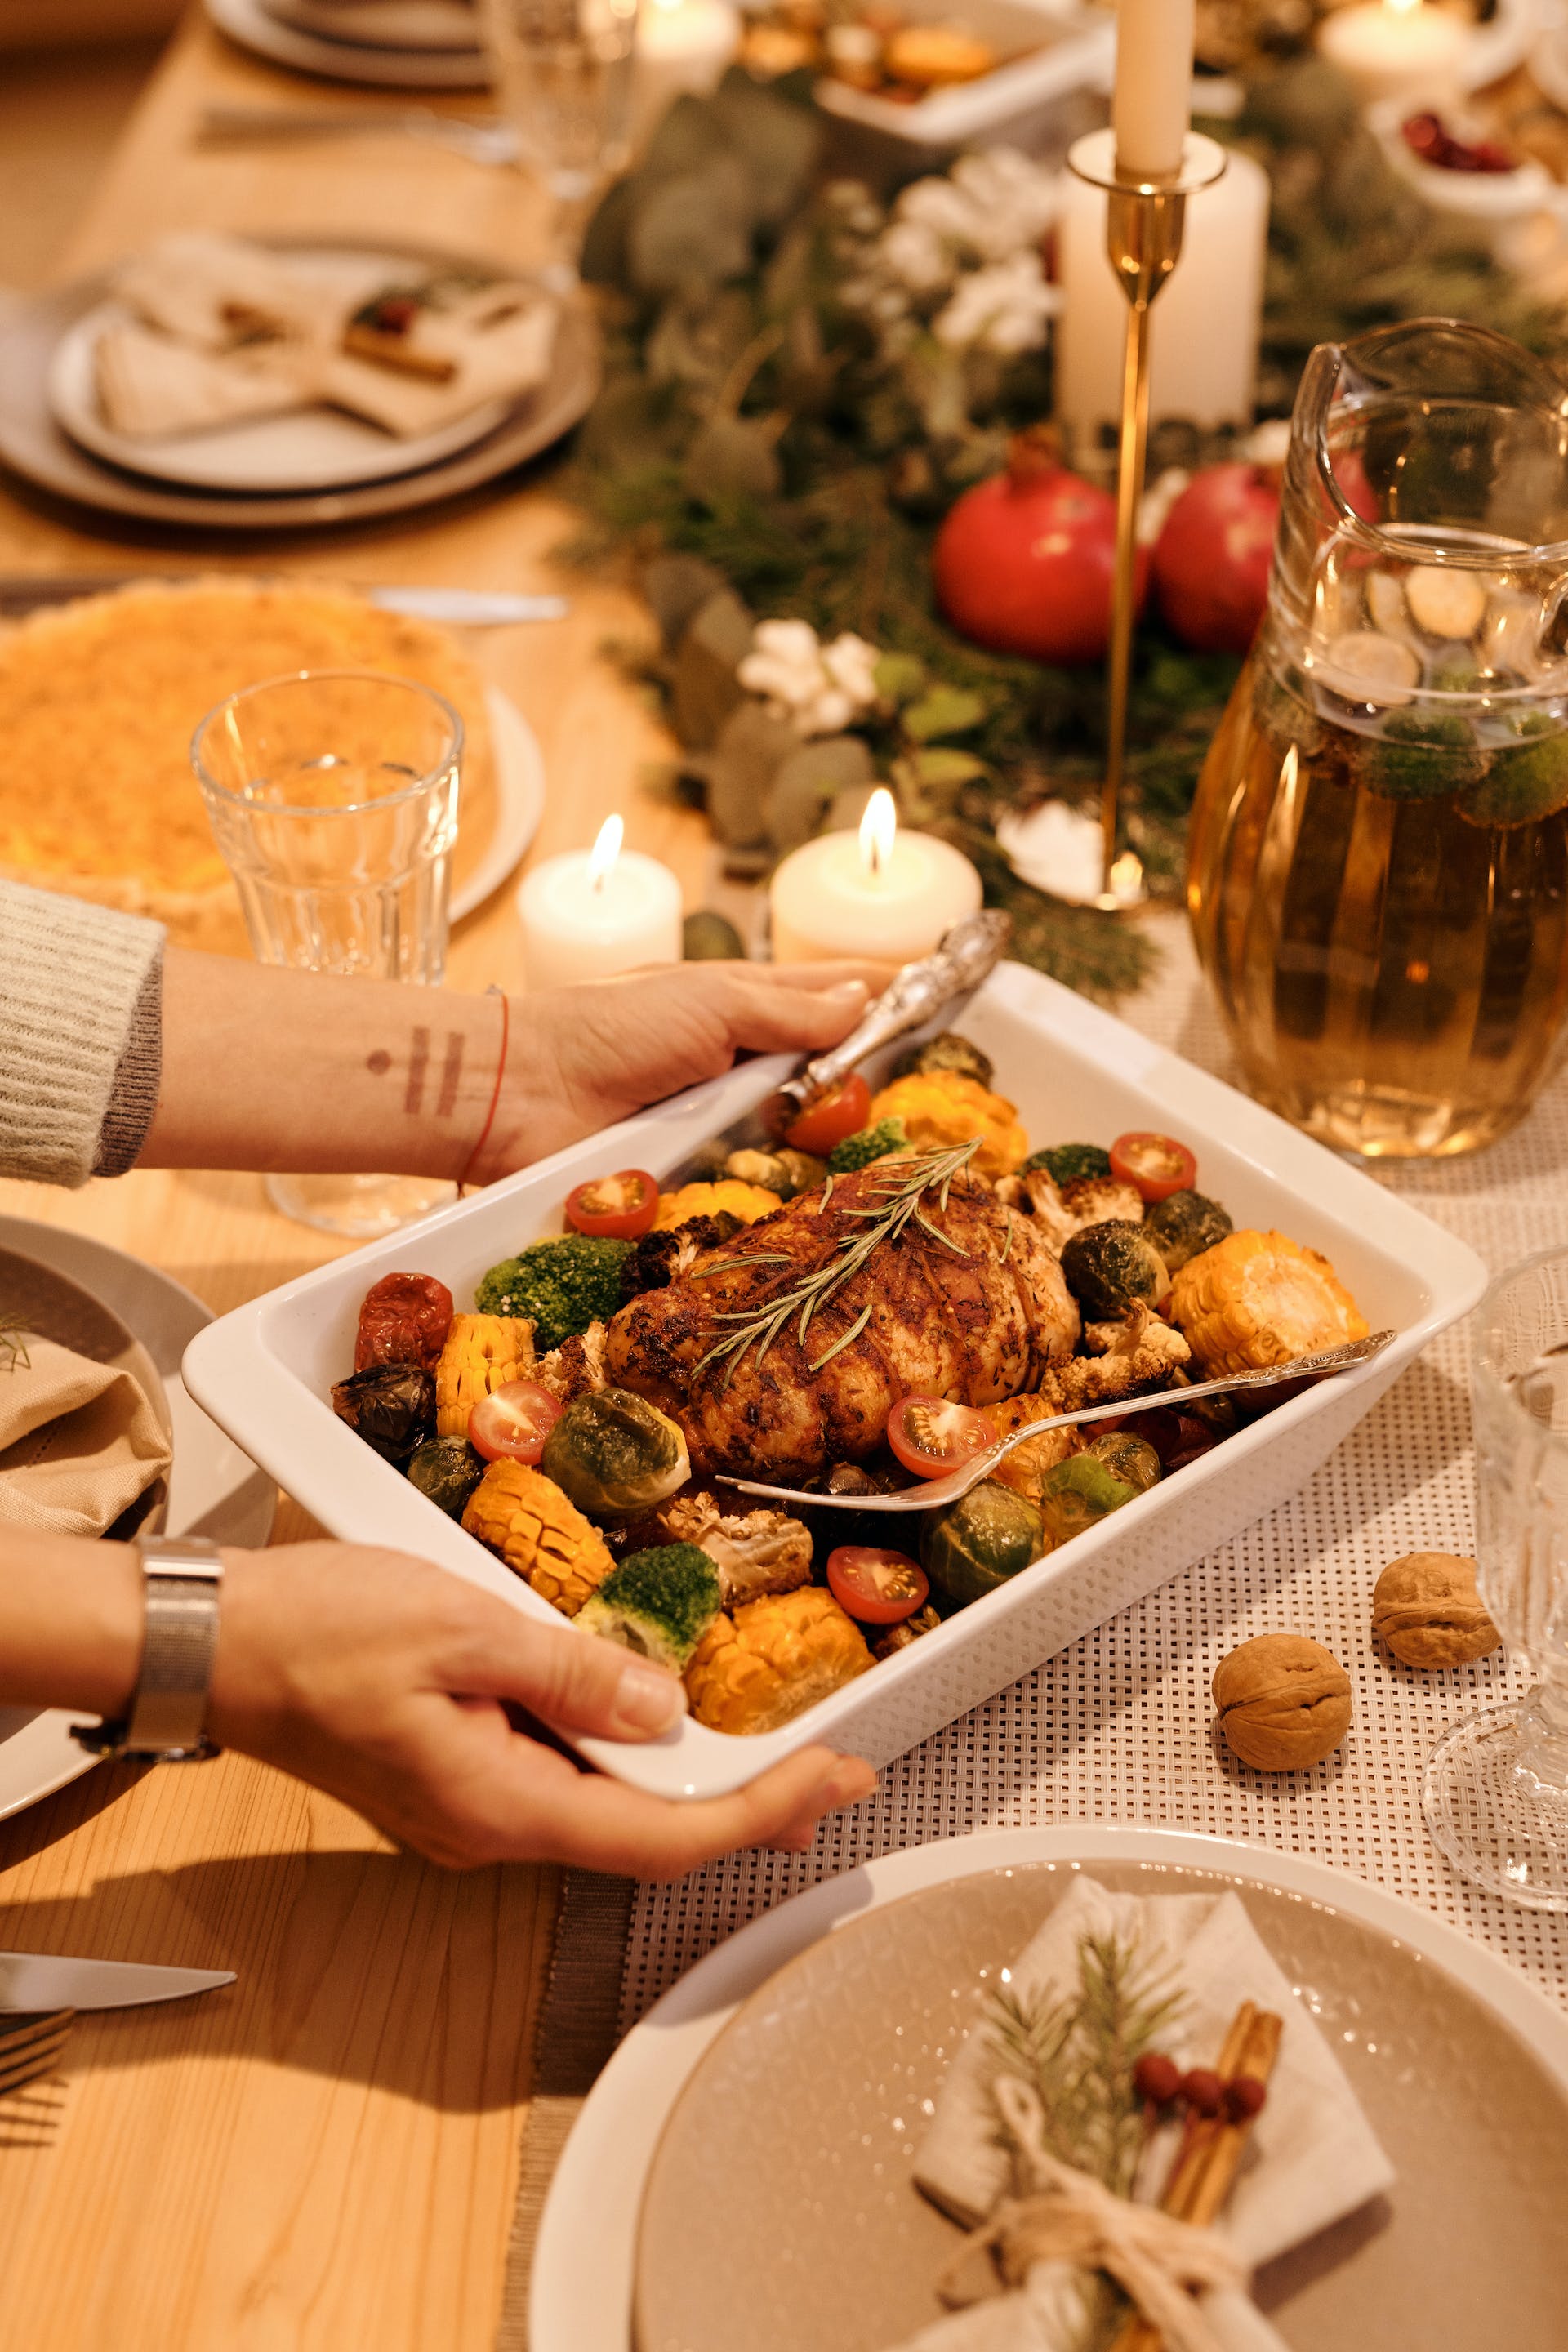 Une personne qui sert des plats faits maison lors du repas de Noël | Source : Pexels